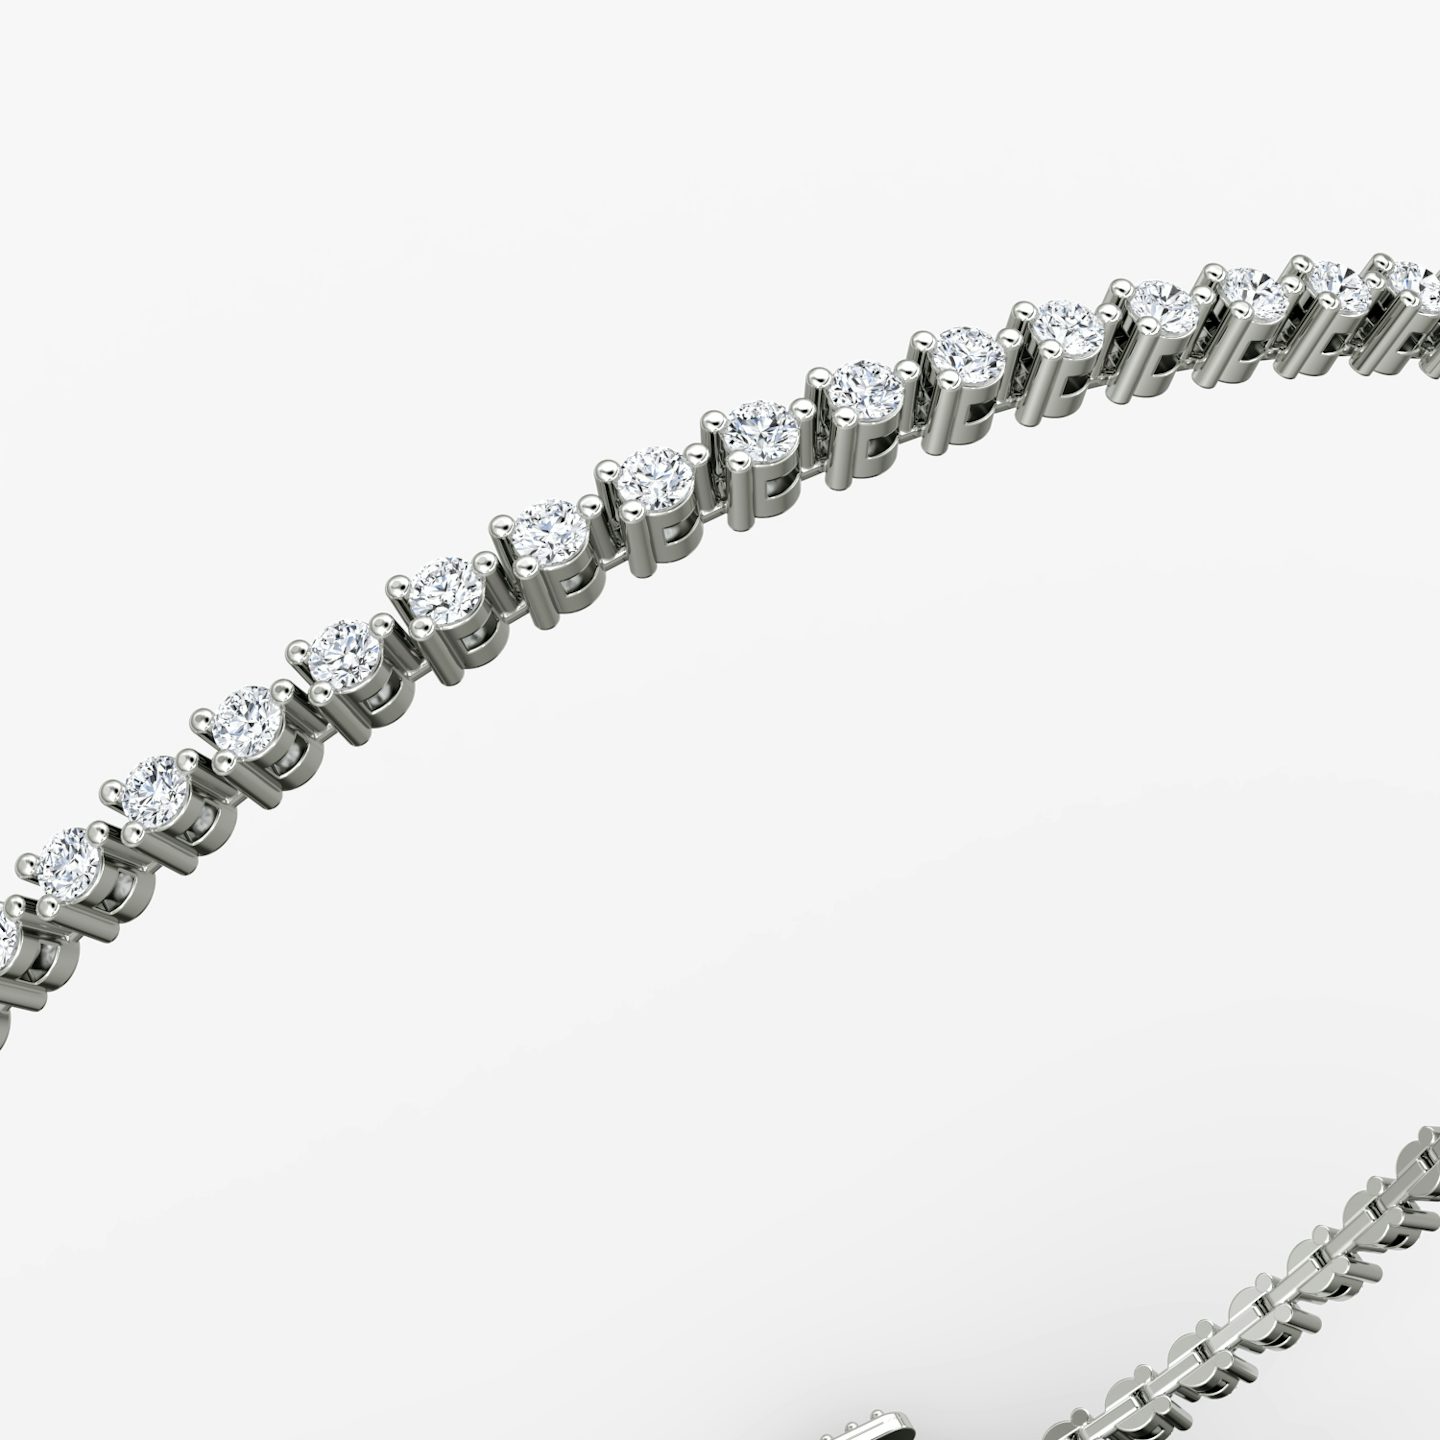 Bracelet Tiny Tennis | Rond Brillant | 14k | Or blanc 18 carats | Taille des diamants: Original | Longueur de la chaîne: 6